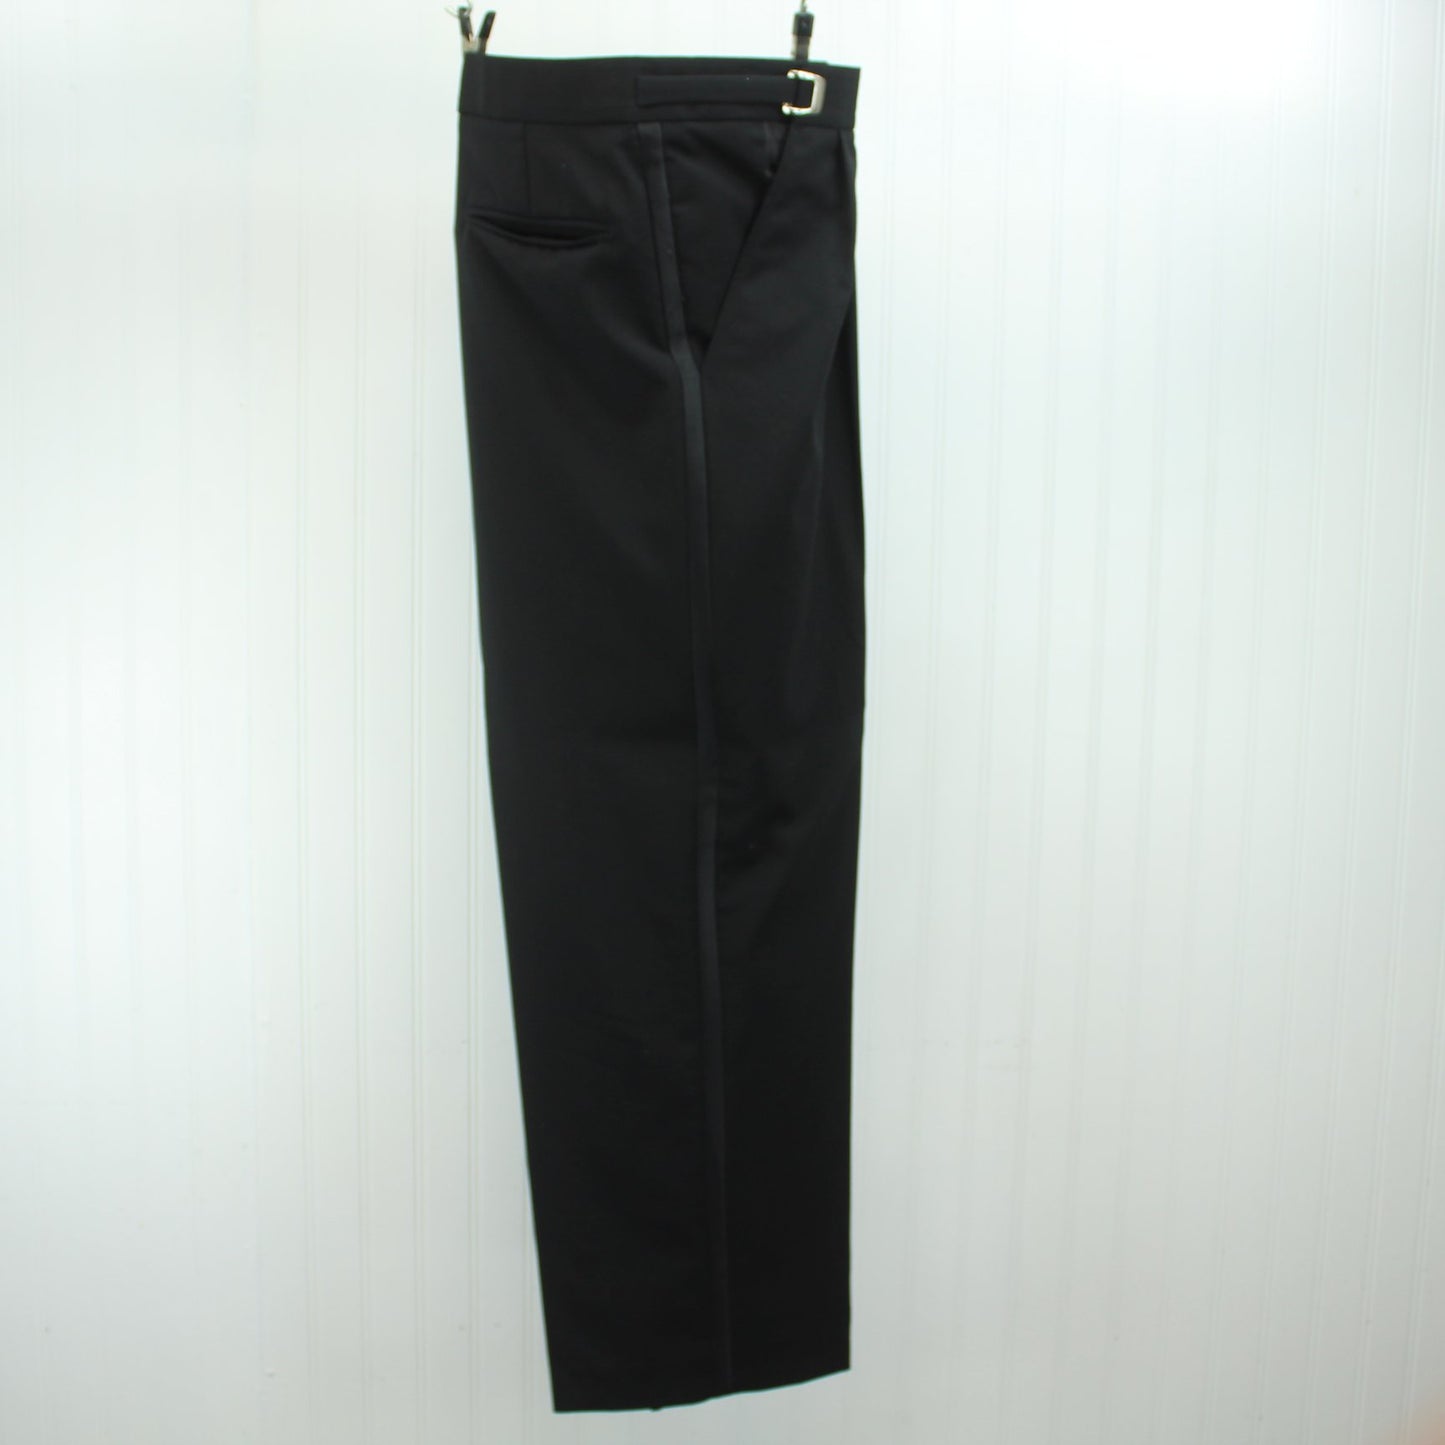 Perry Ellis Evening Suit Formal Men's Black Wool 3 Piece Satin Lapel Trim Print Vest 44R pants leg detail